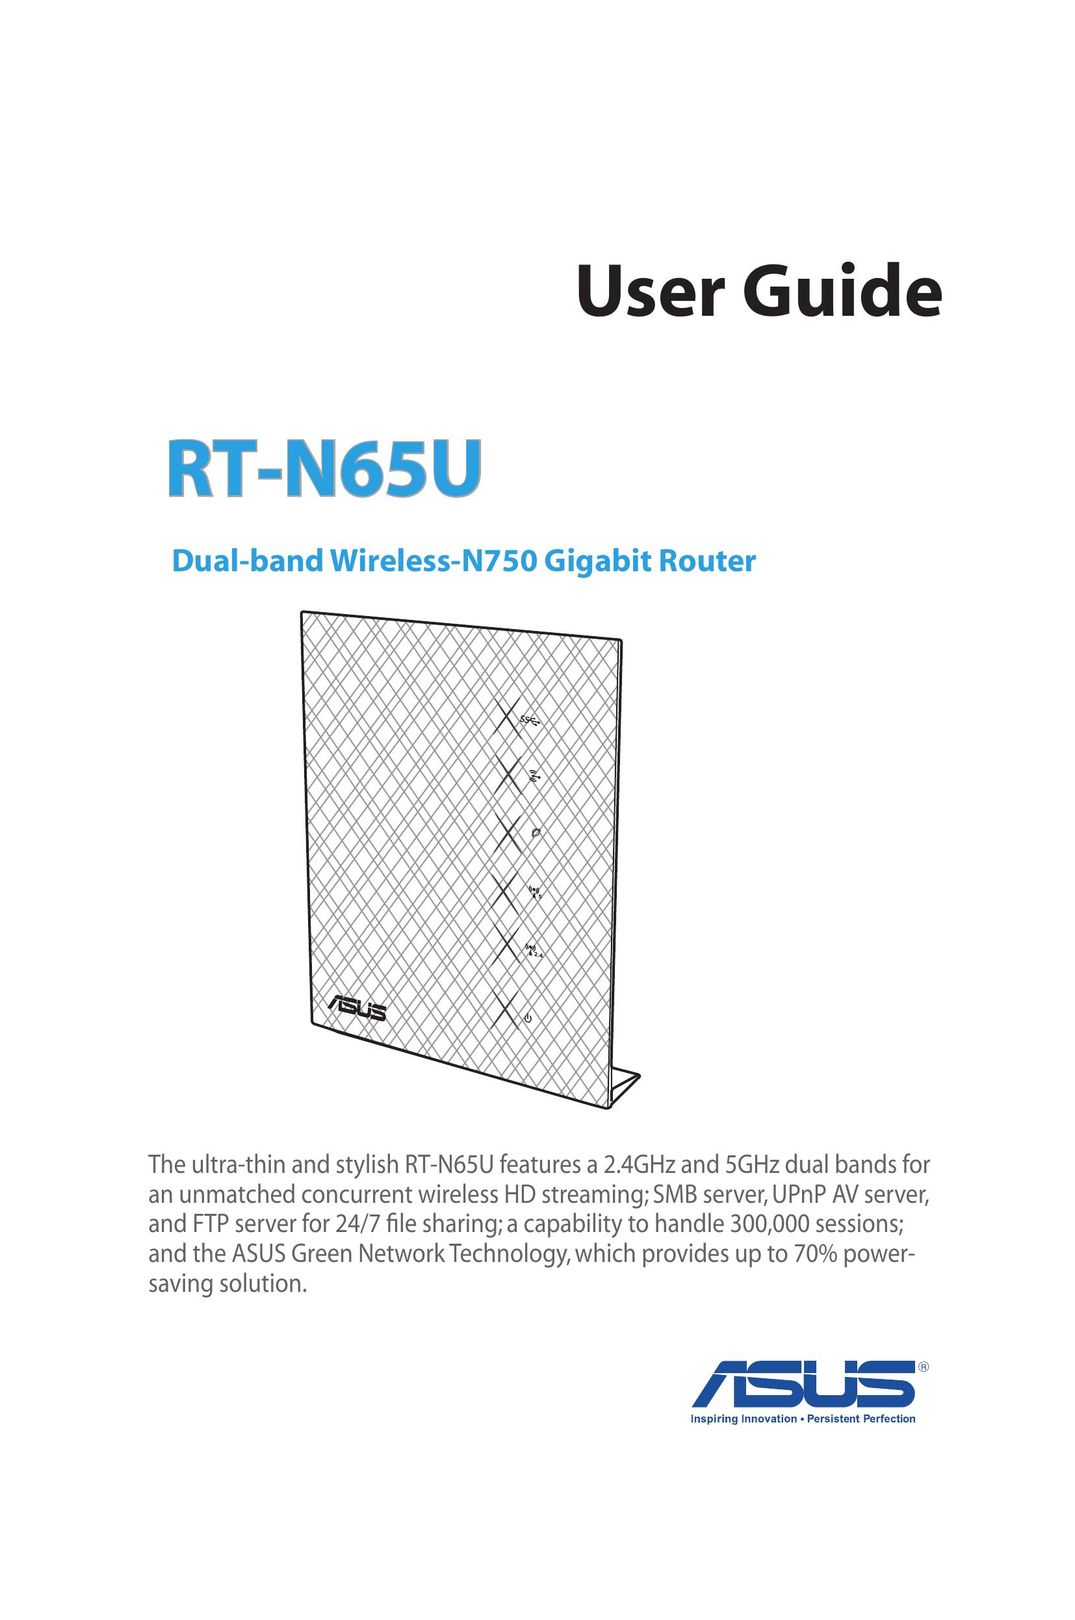 Asus RT-N65U Network Router User Manual